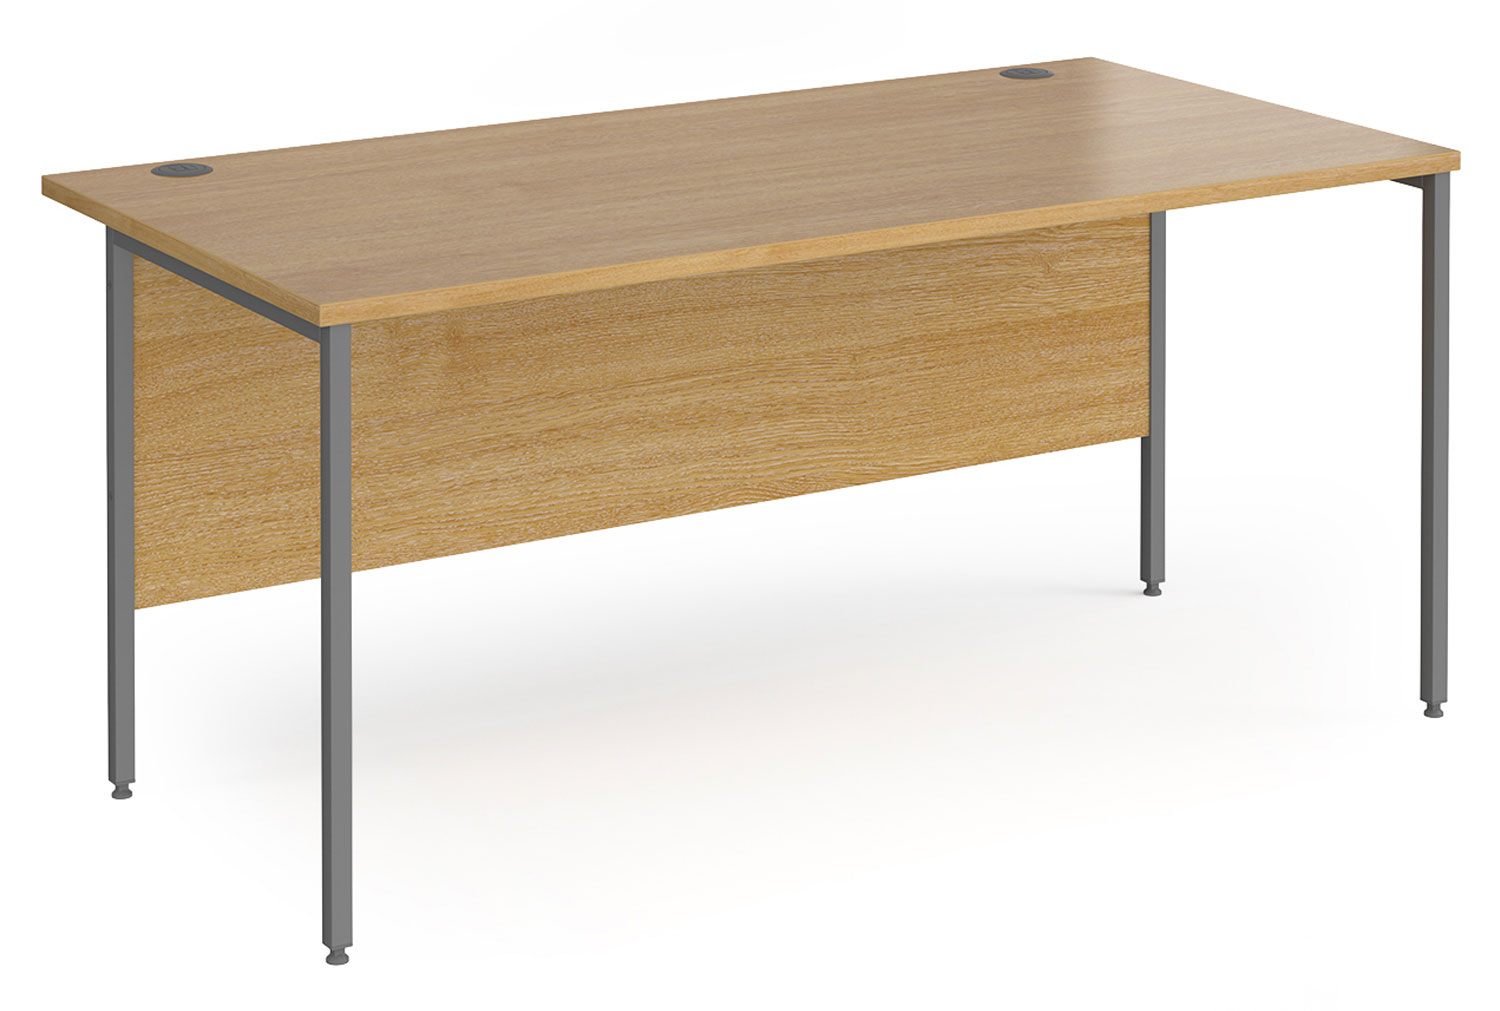 Value Line Classic+ Rectangular H-Leg Office Desk (Graphite Leg), 160wx80dx73h (cm), Oak, Fully Installed